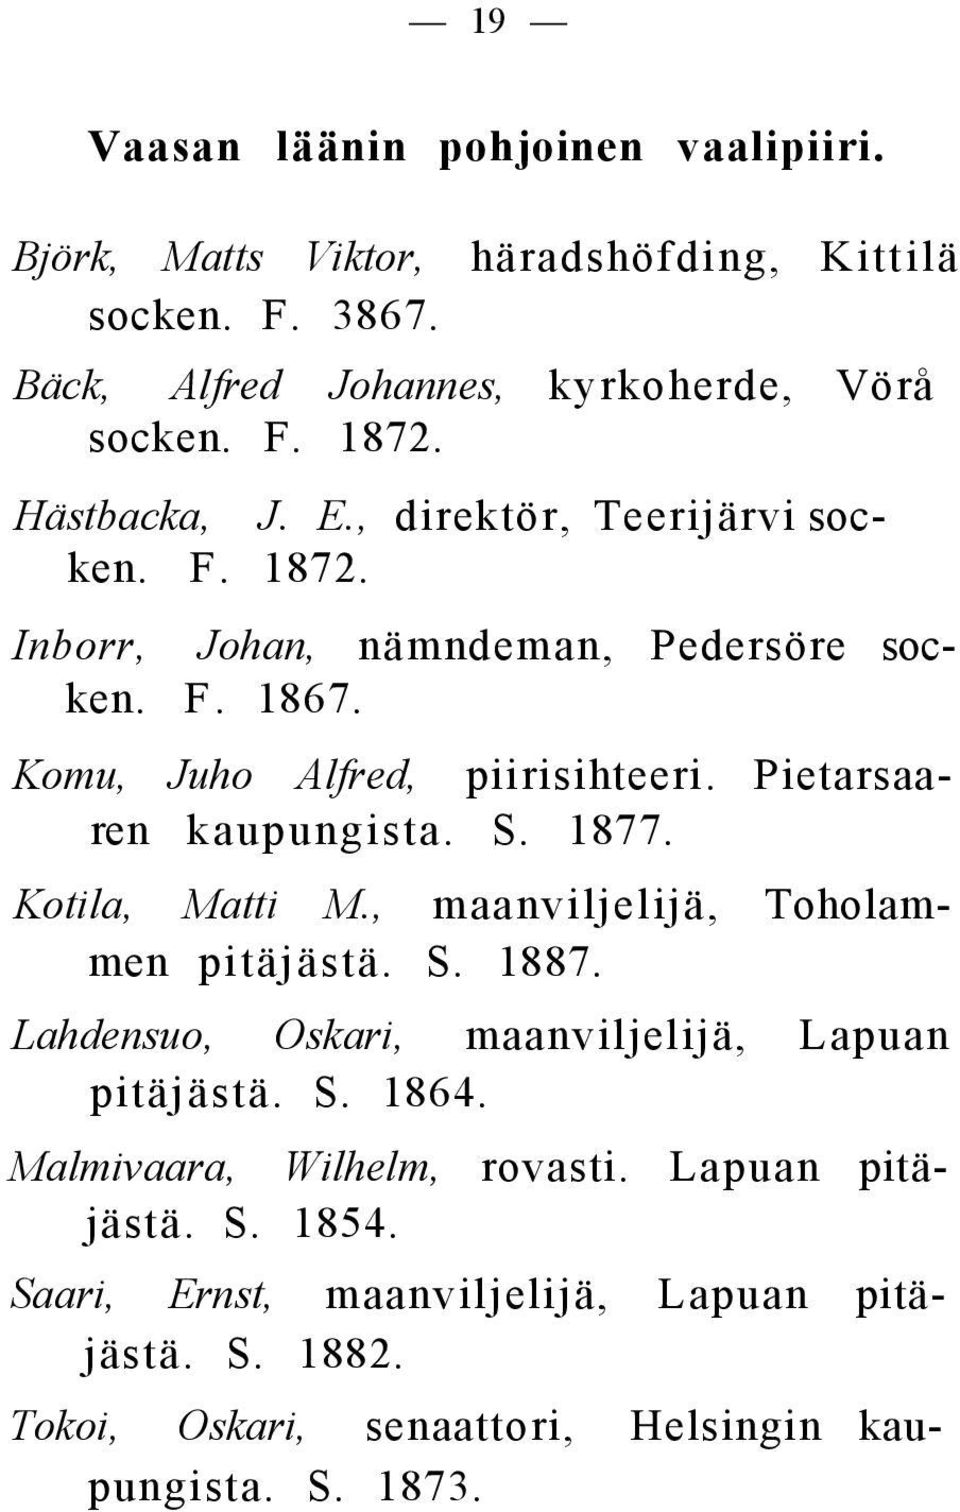 Pietarsaaren kaupungista. S. 1877. Kotila, Matti M., maanviljelijä, Toholammen pitäjästä. S. 1887. Lahdensuo, Oskari, maanviljelijä, Lapuan pitäjästä. S. 1864.